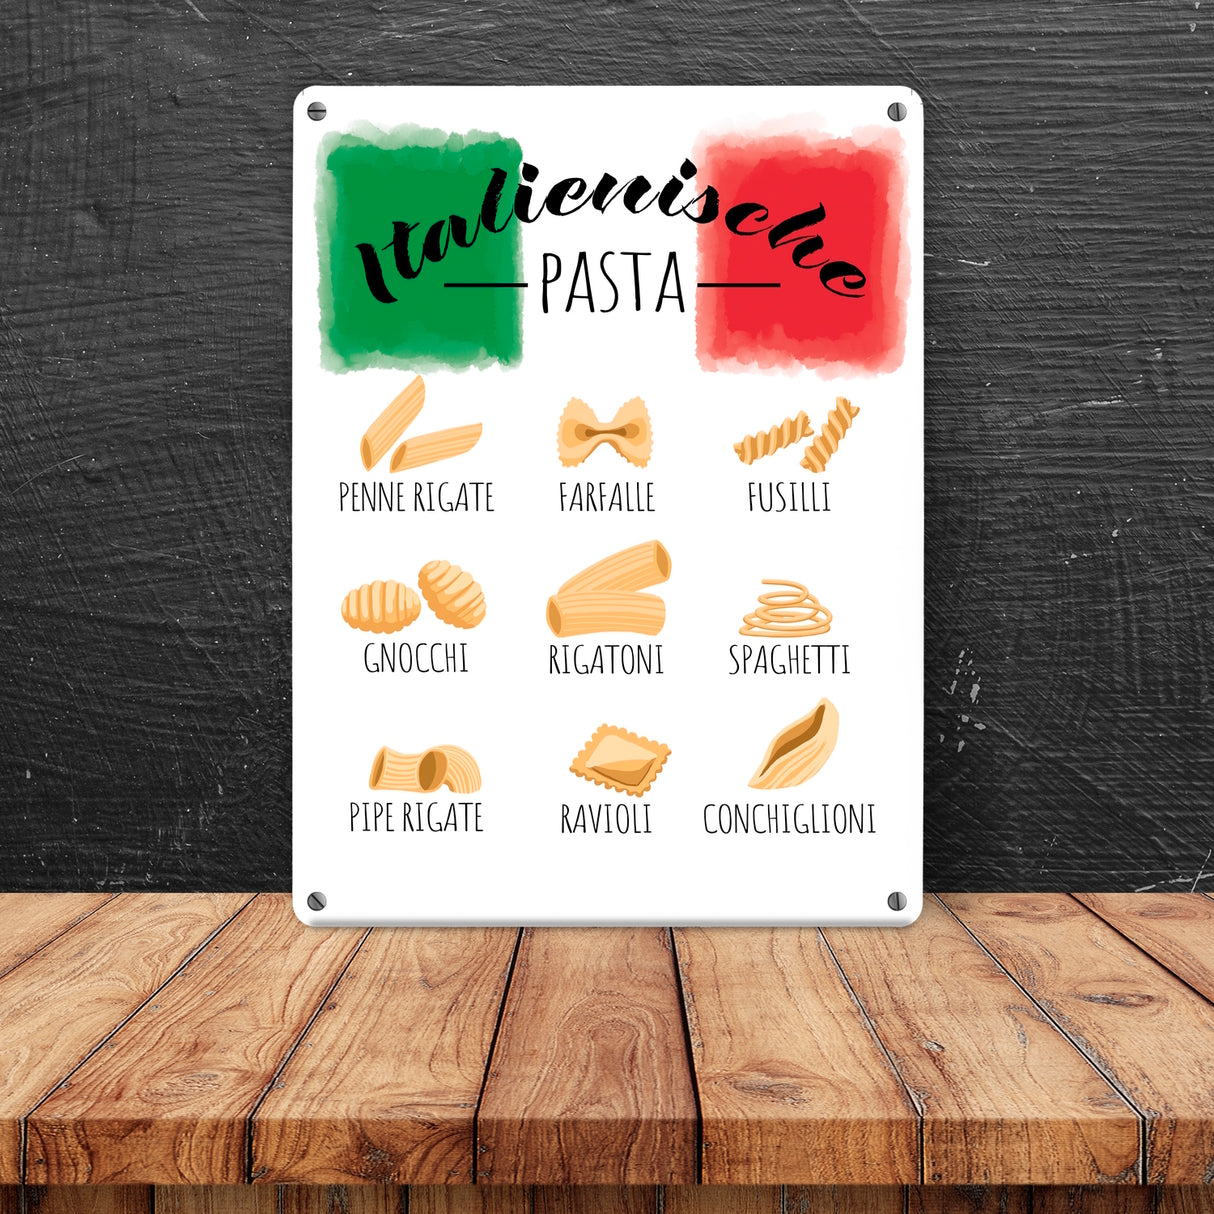 für Italienische die Jetzt und kaufen Küche – Pasta Deko - Metallschild klicken! -